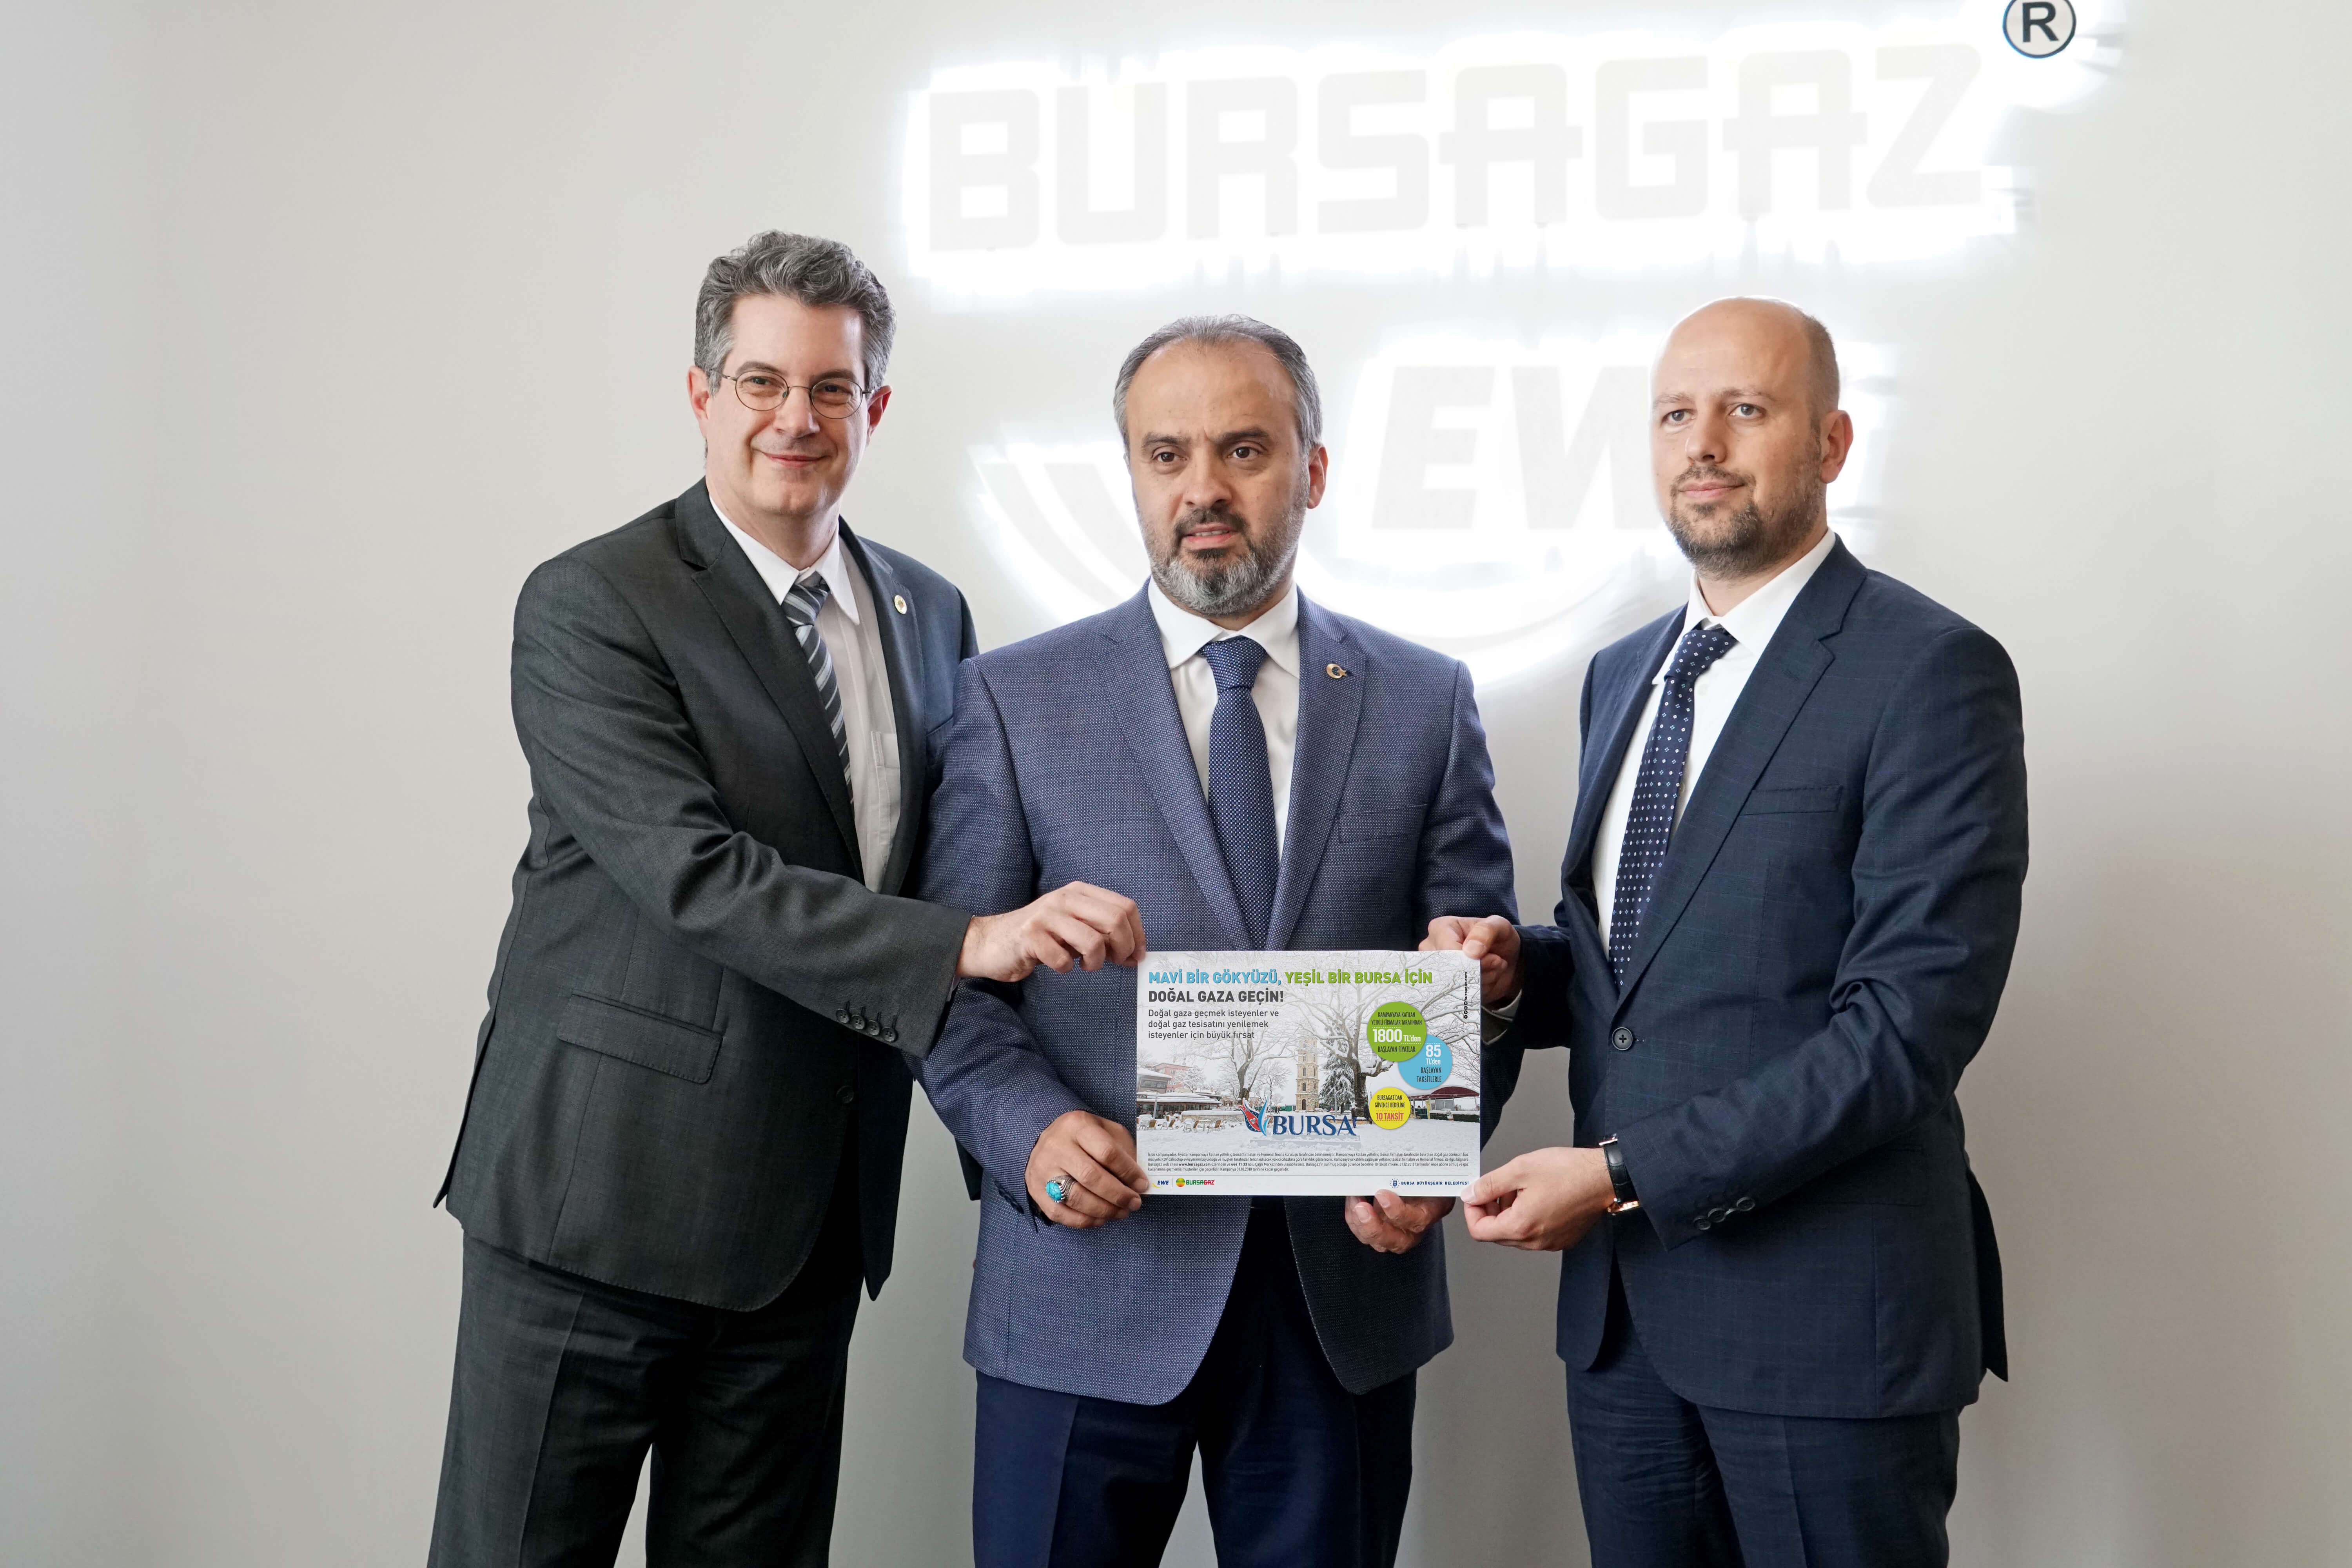 Bursa Büyükşehir Belediyesi ve Bursagaz, Bursa’nın havası için el ele